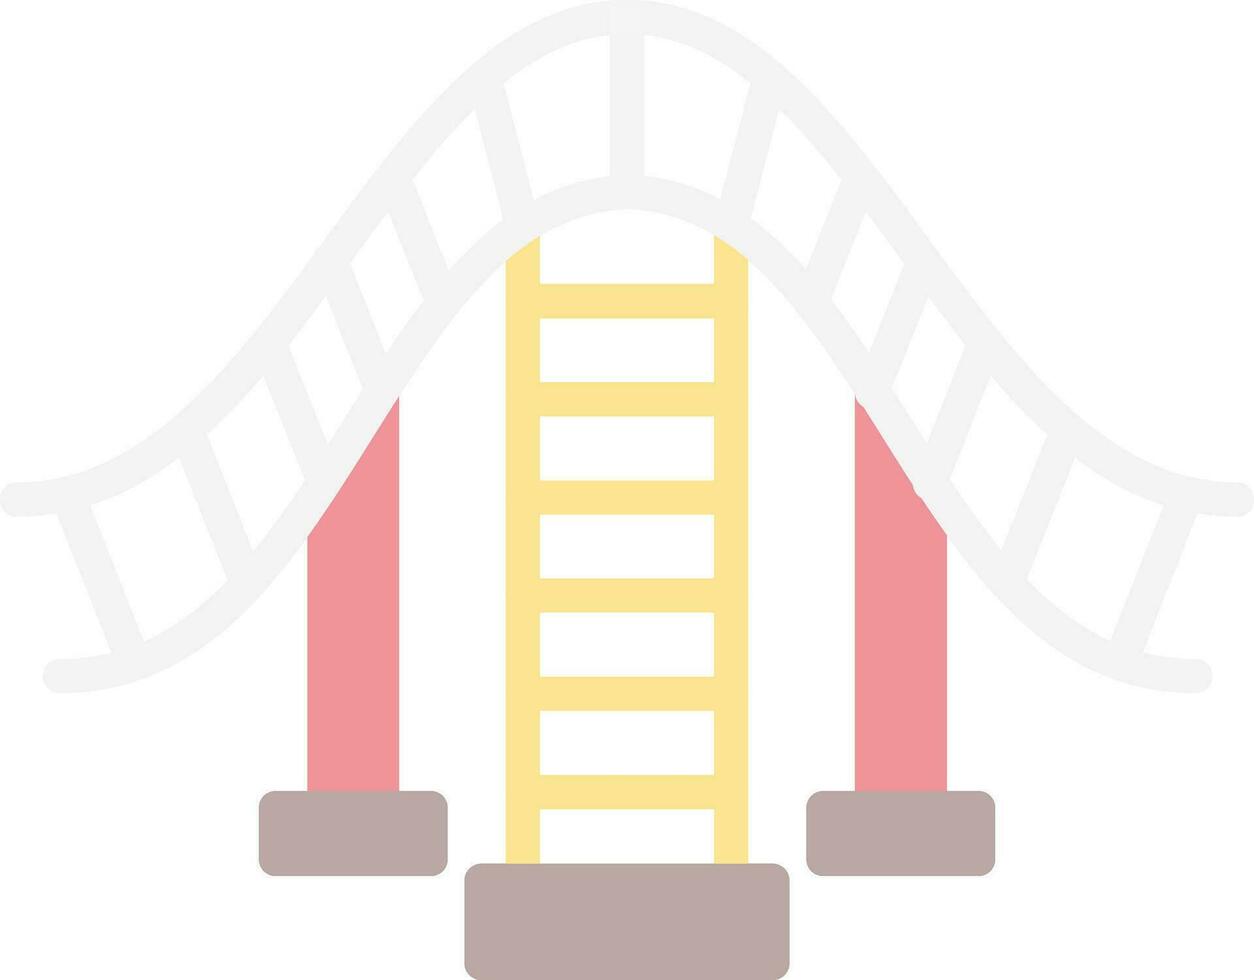 Roller coaster Vector Icon Design